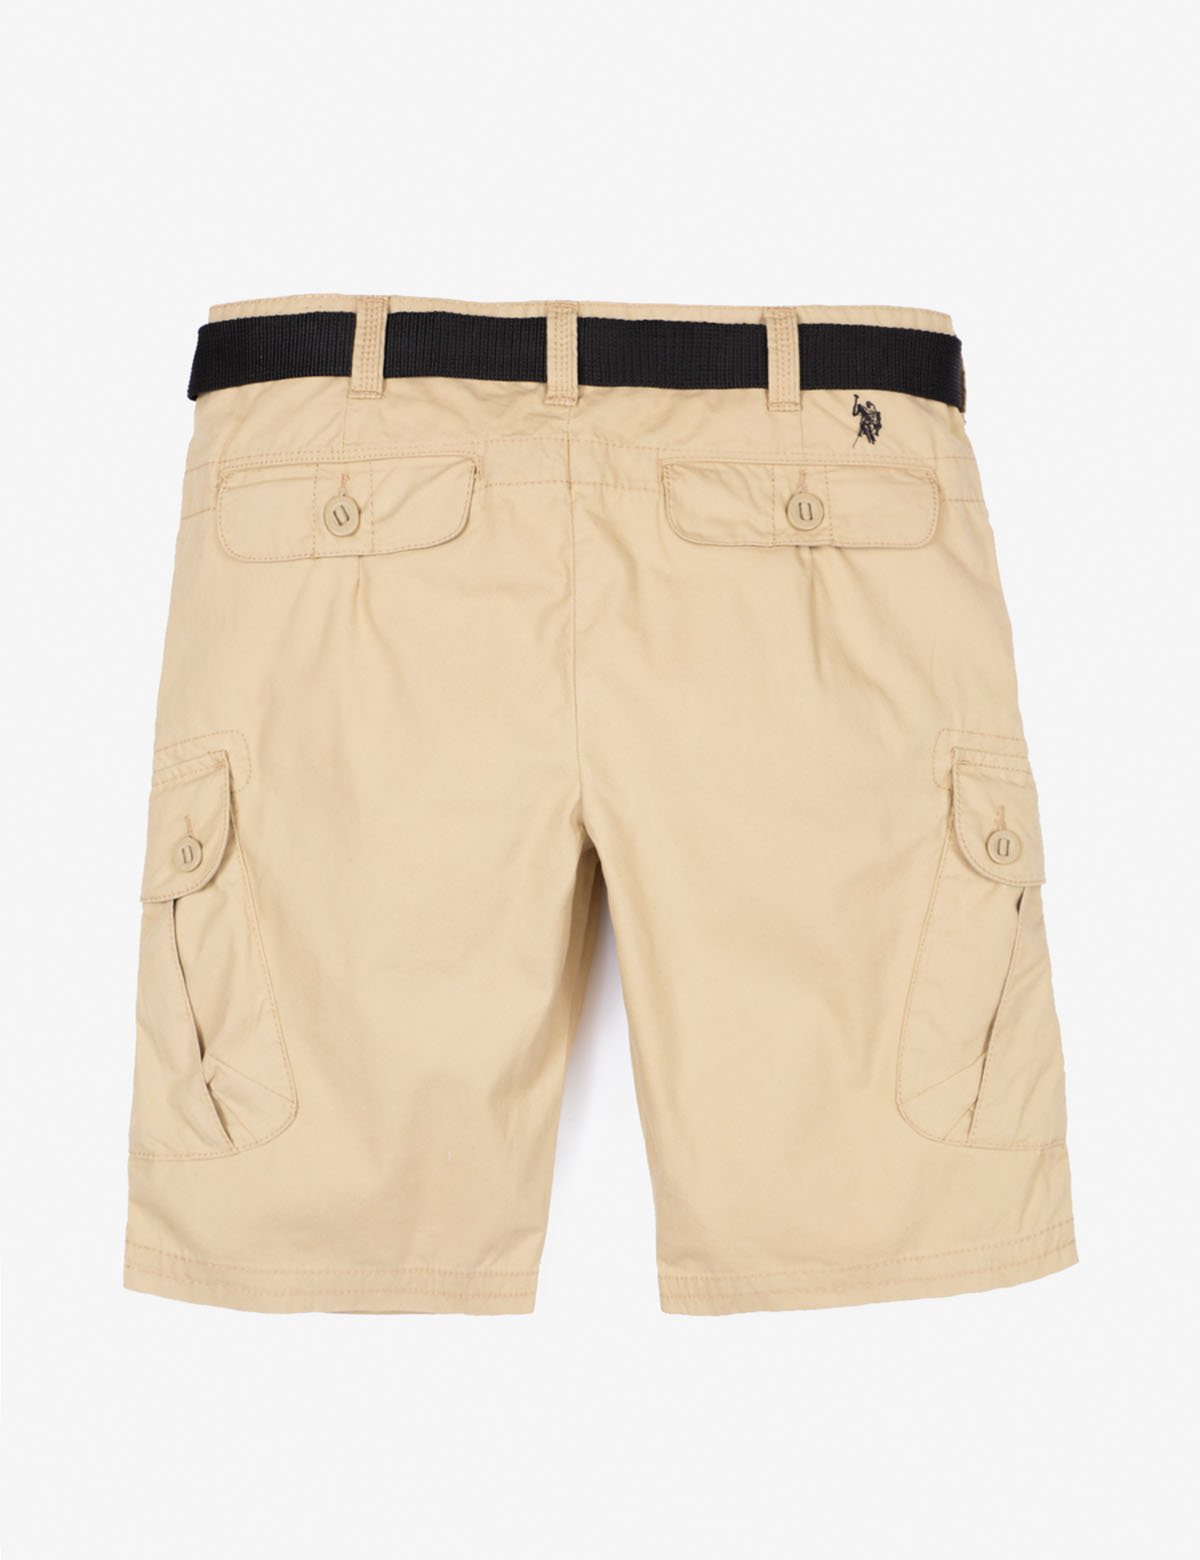 polo cargo shorts